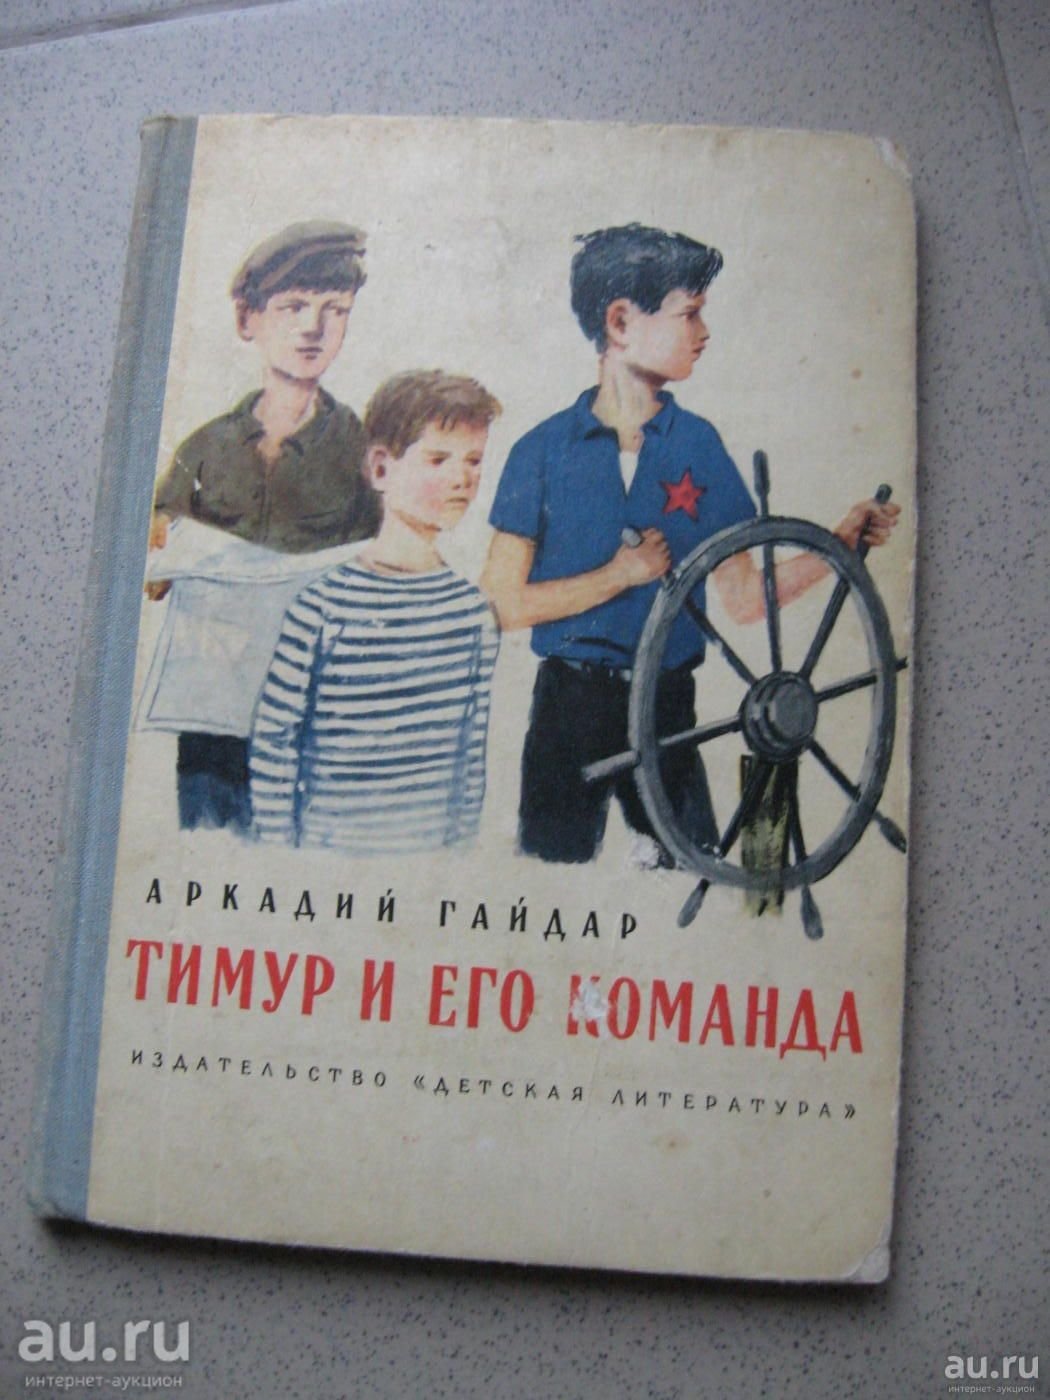 Тимур и его команда первое издание 1940